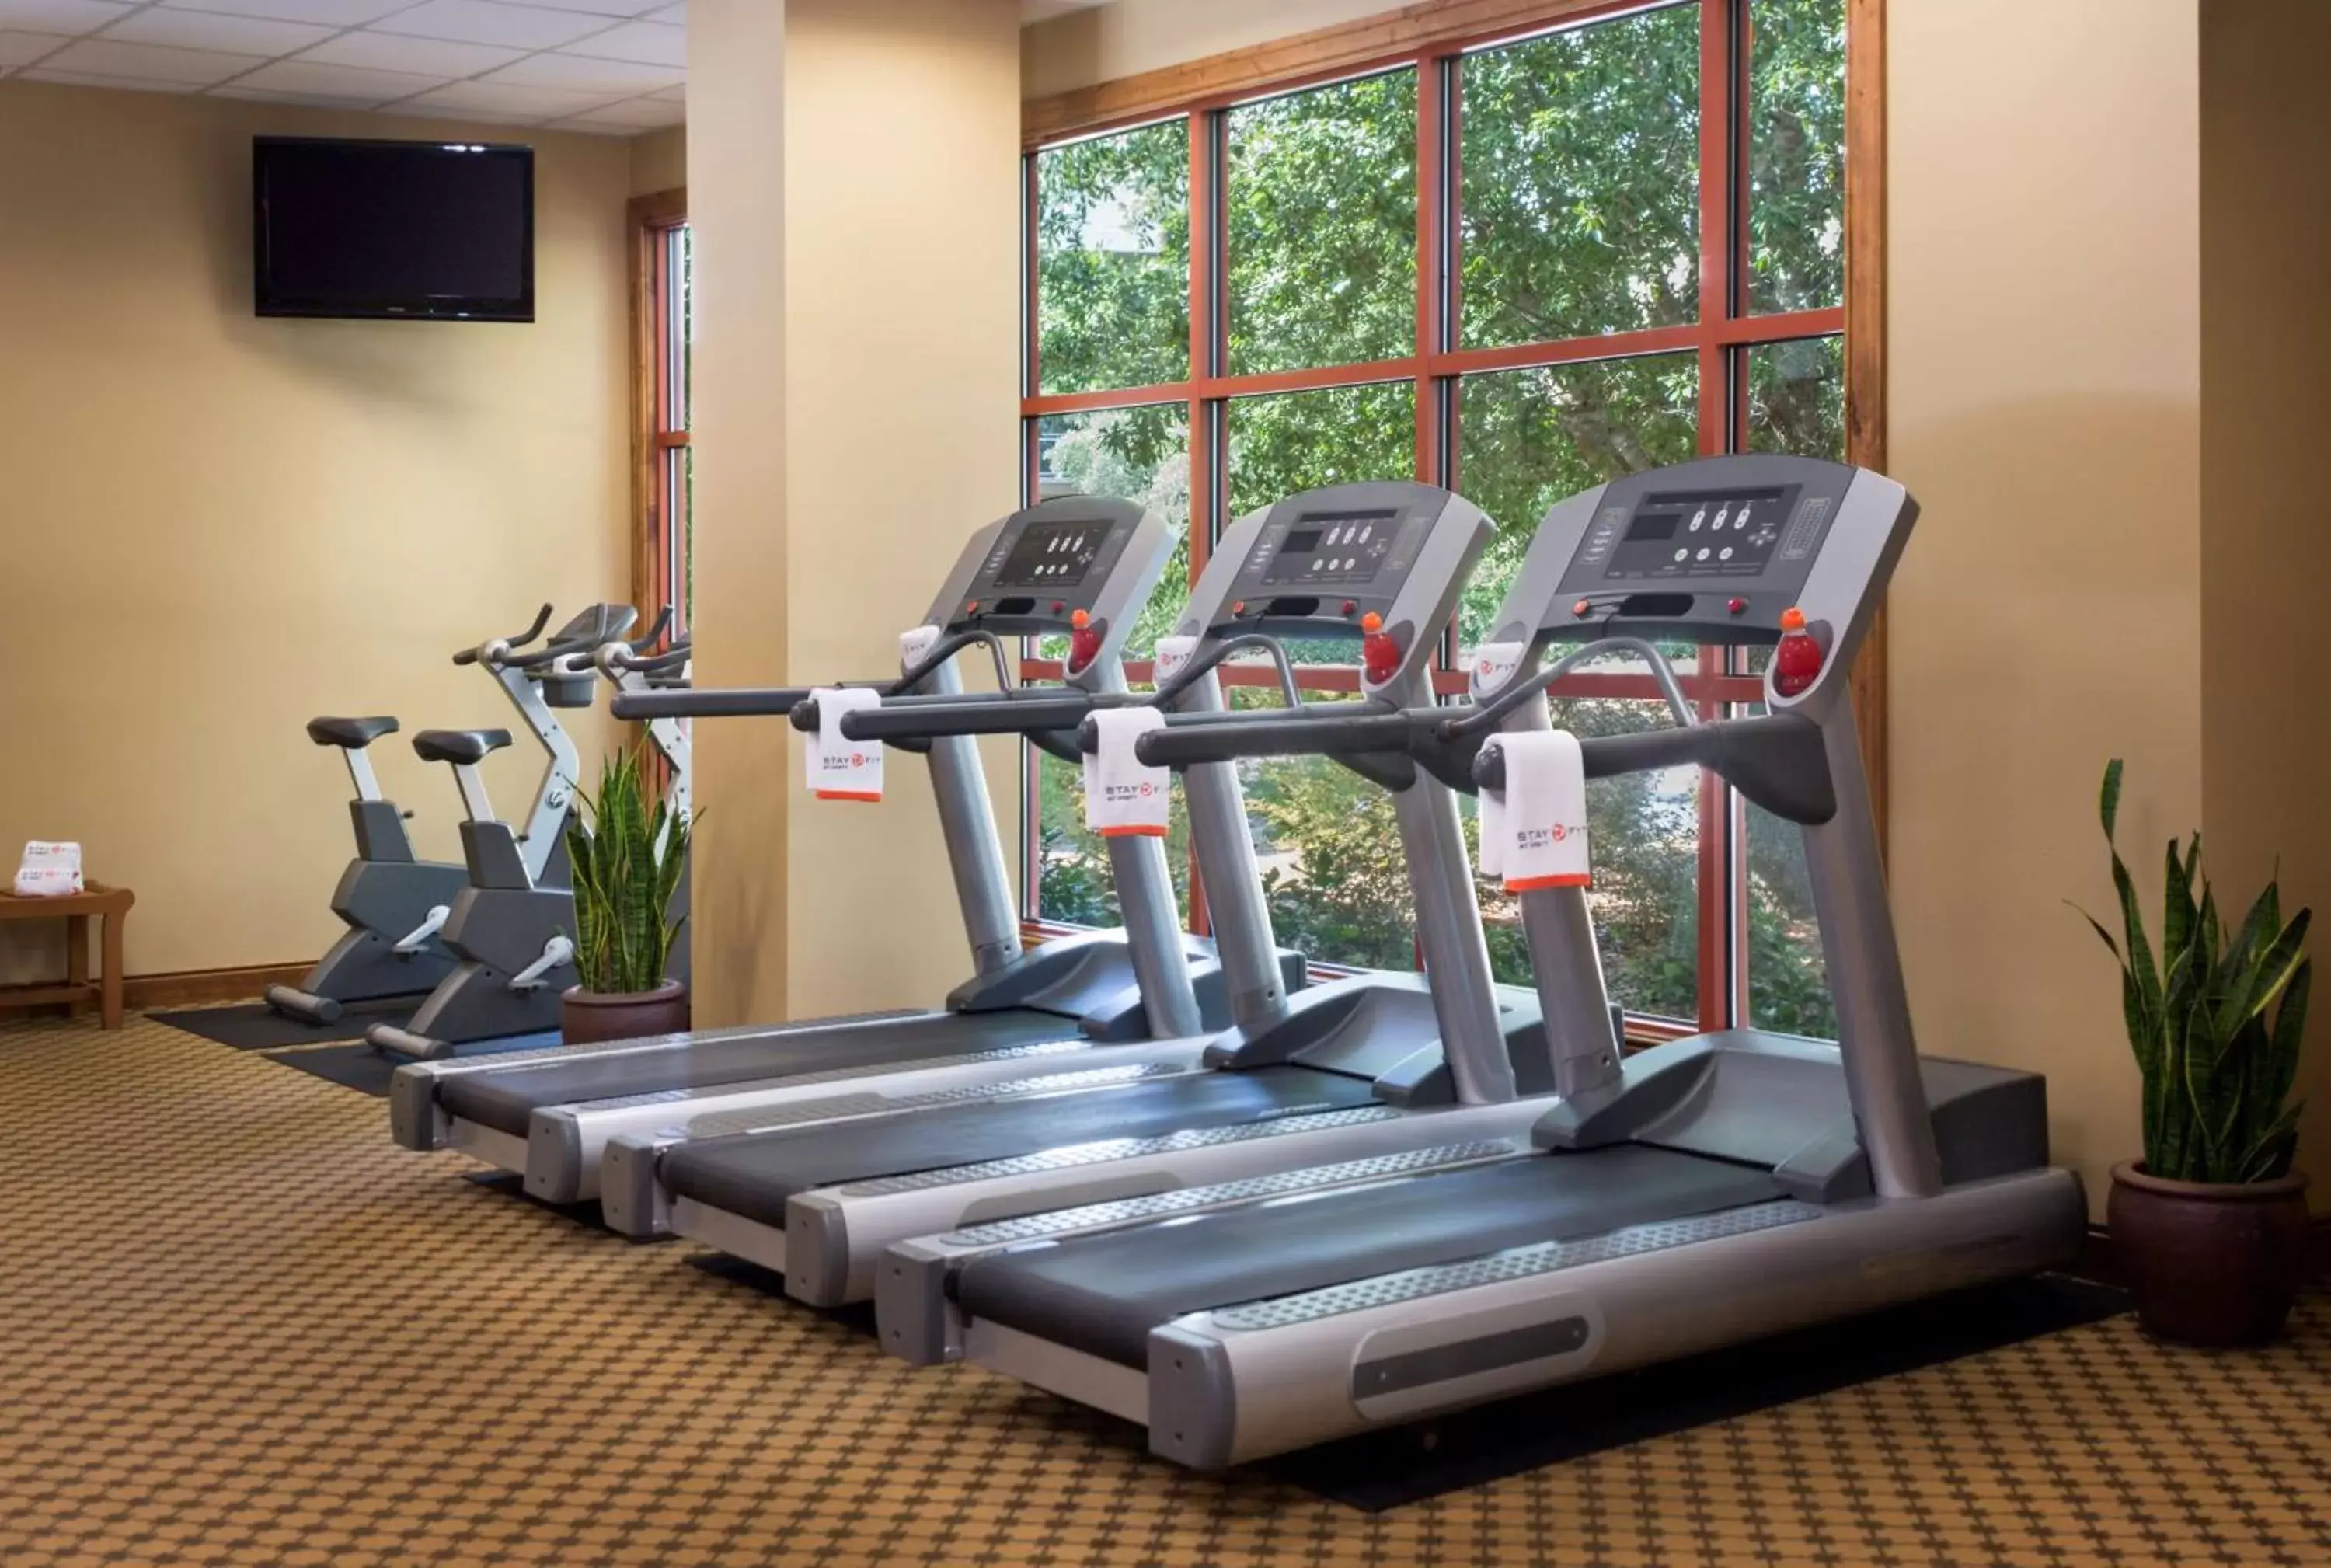 Fitness centre/facilities, Fitness Center/Facilities in Hyatt Vacation Club at Wild Oak Ranch